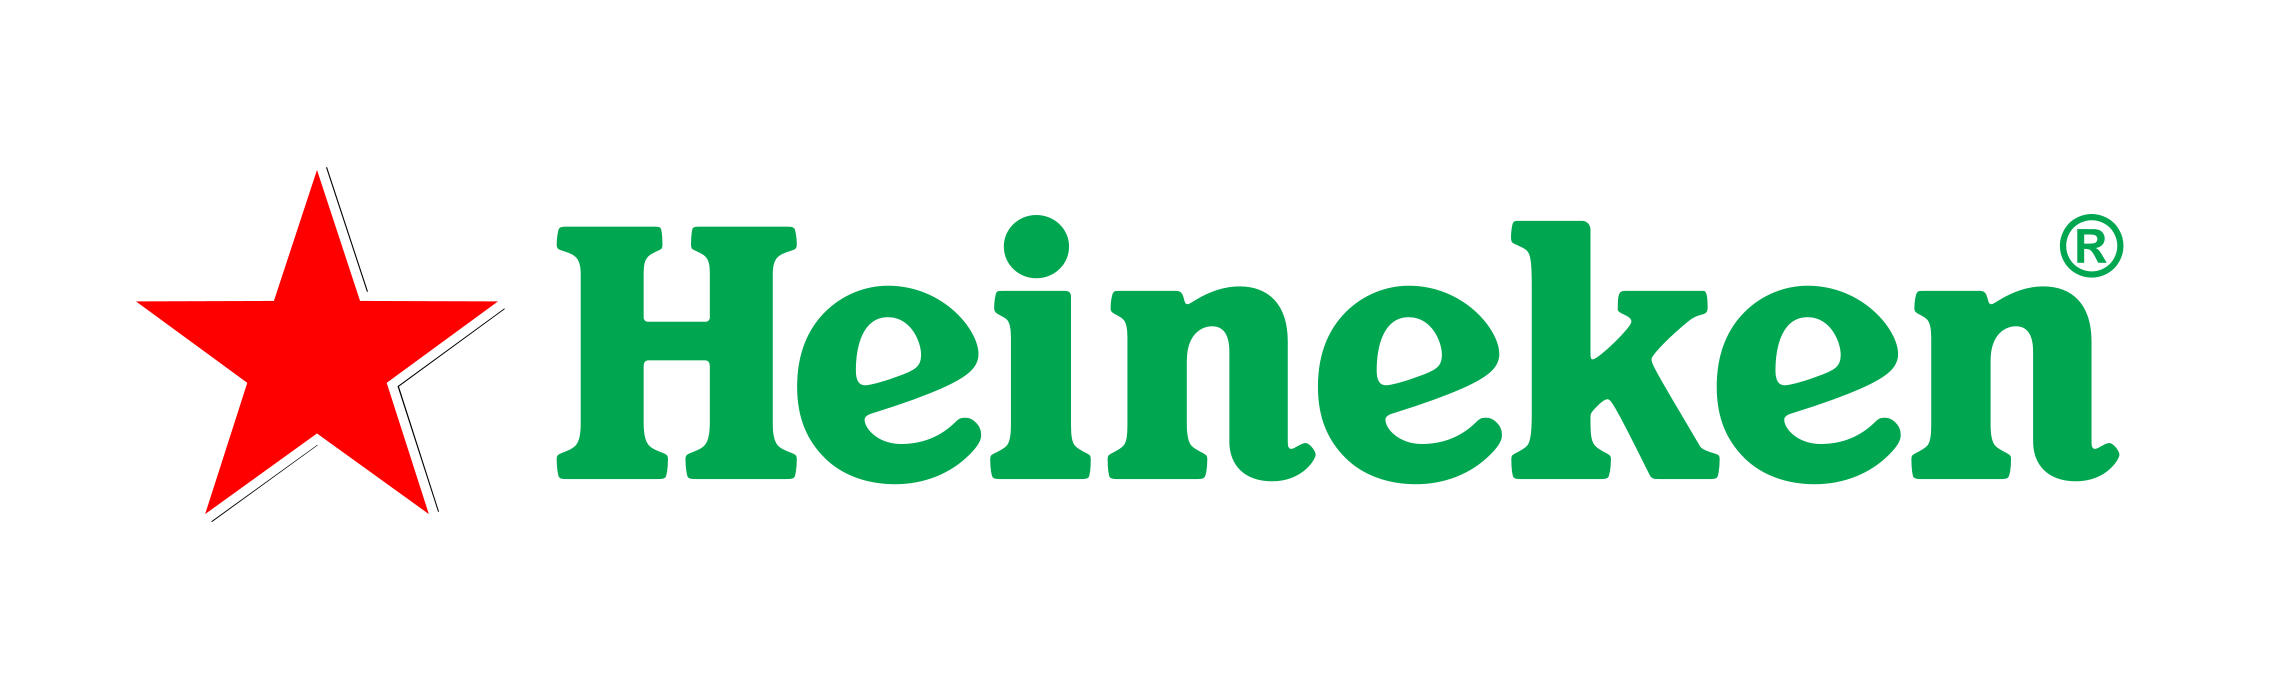 Inspiring-Heineken-Logo-Png-37-For-Design-A-Logo-with-Heineken-Logo-Png.jpg